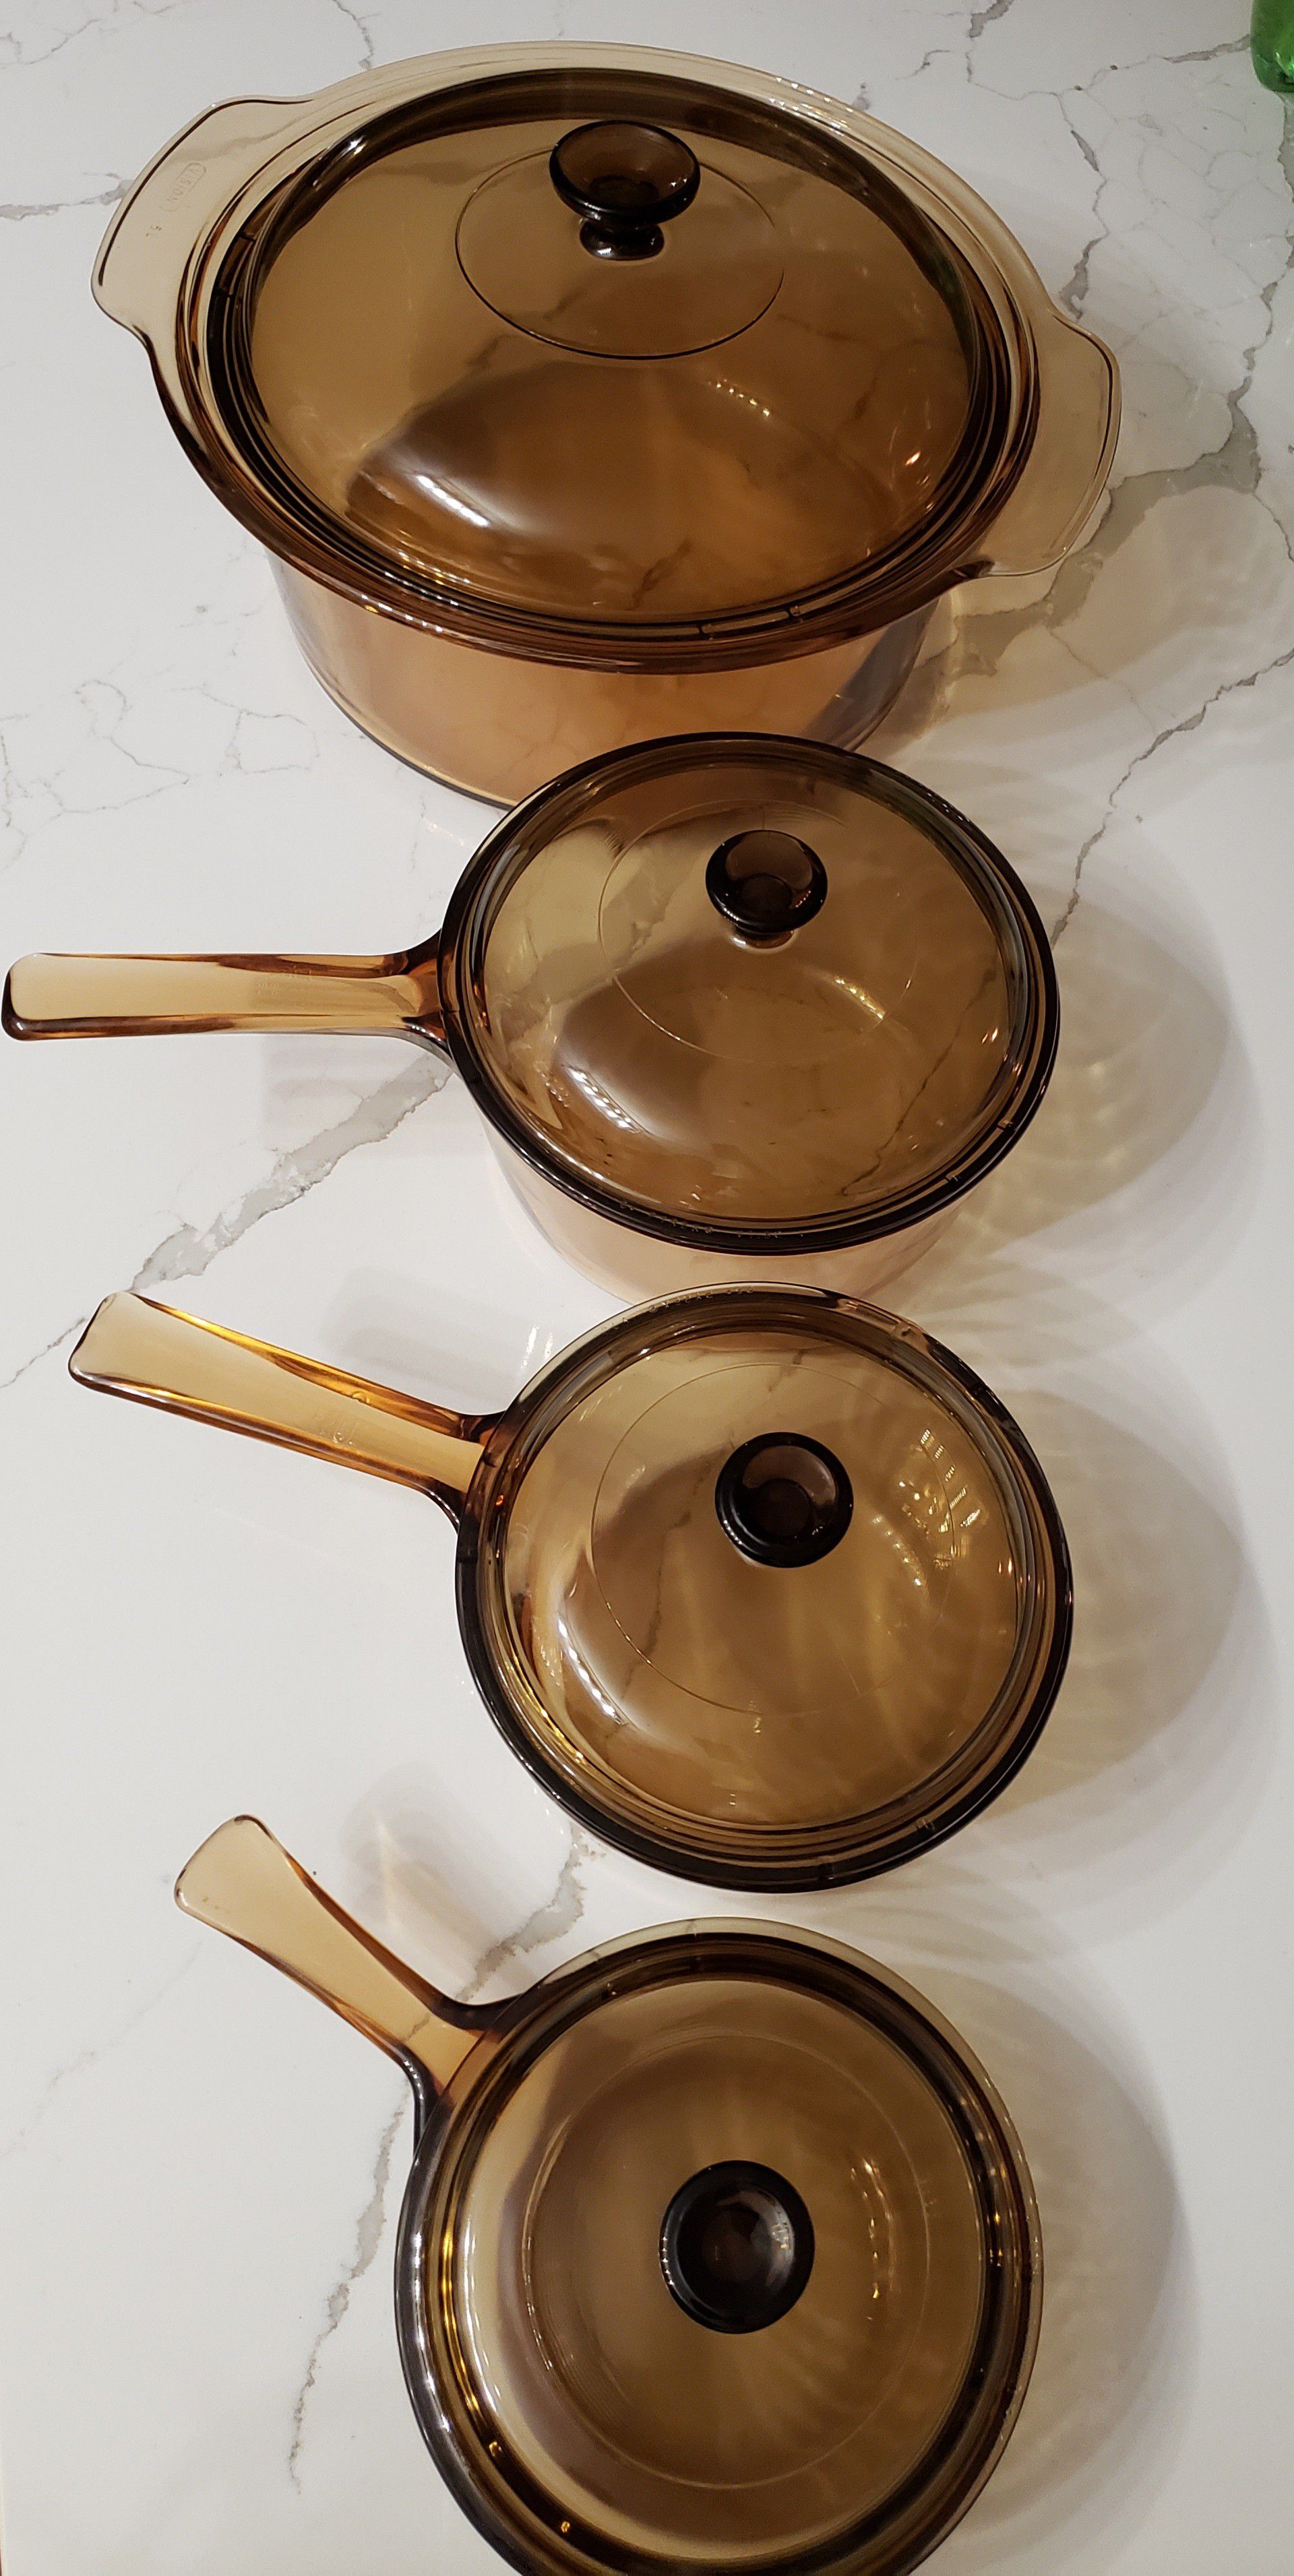 Vision Corning Pot and saucepans.